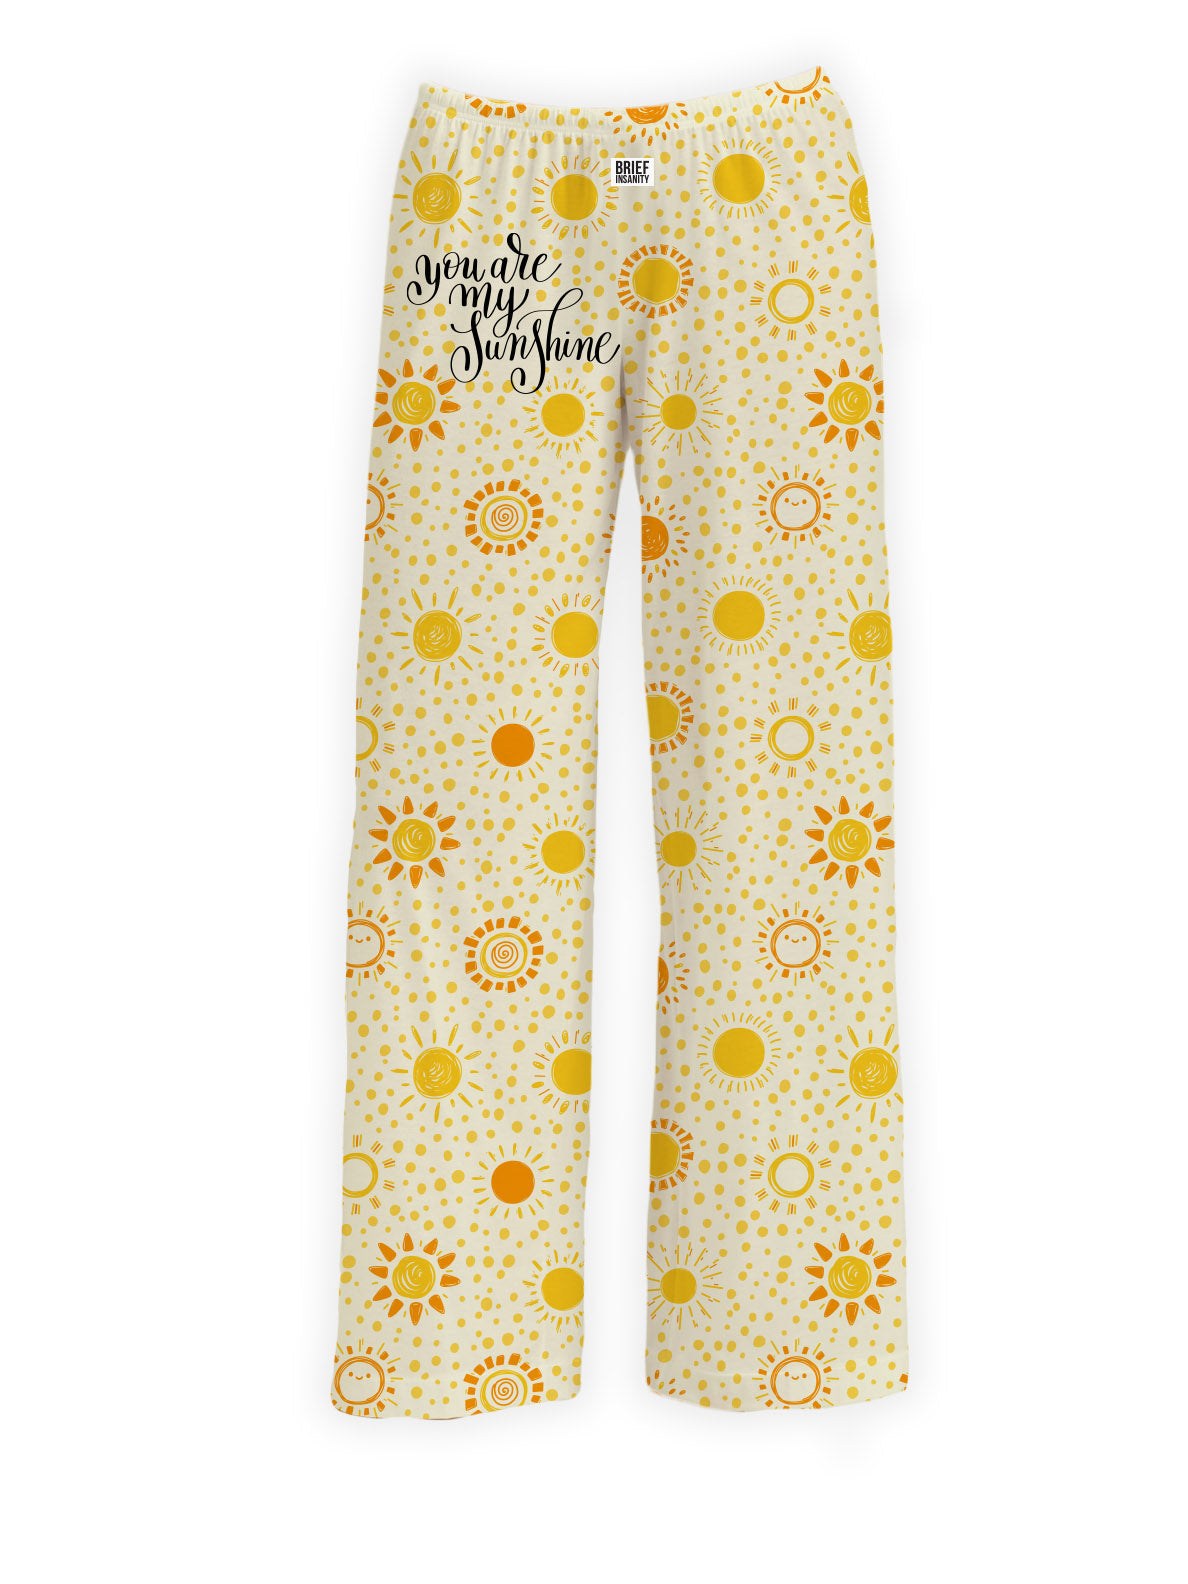  Women's Pajama Pants Sunflower Flowers Yellow Retro